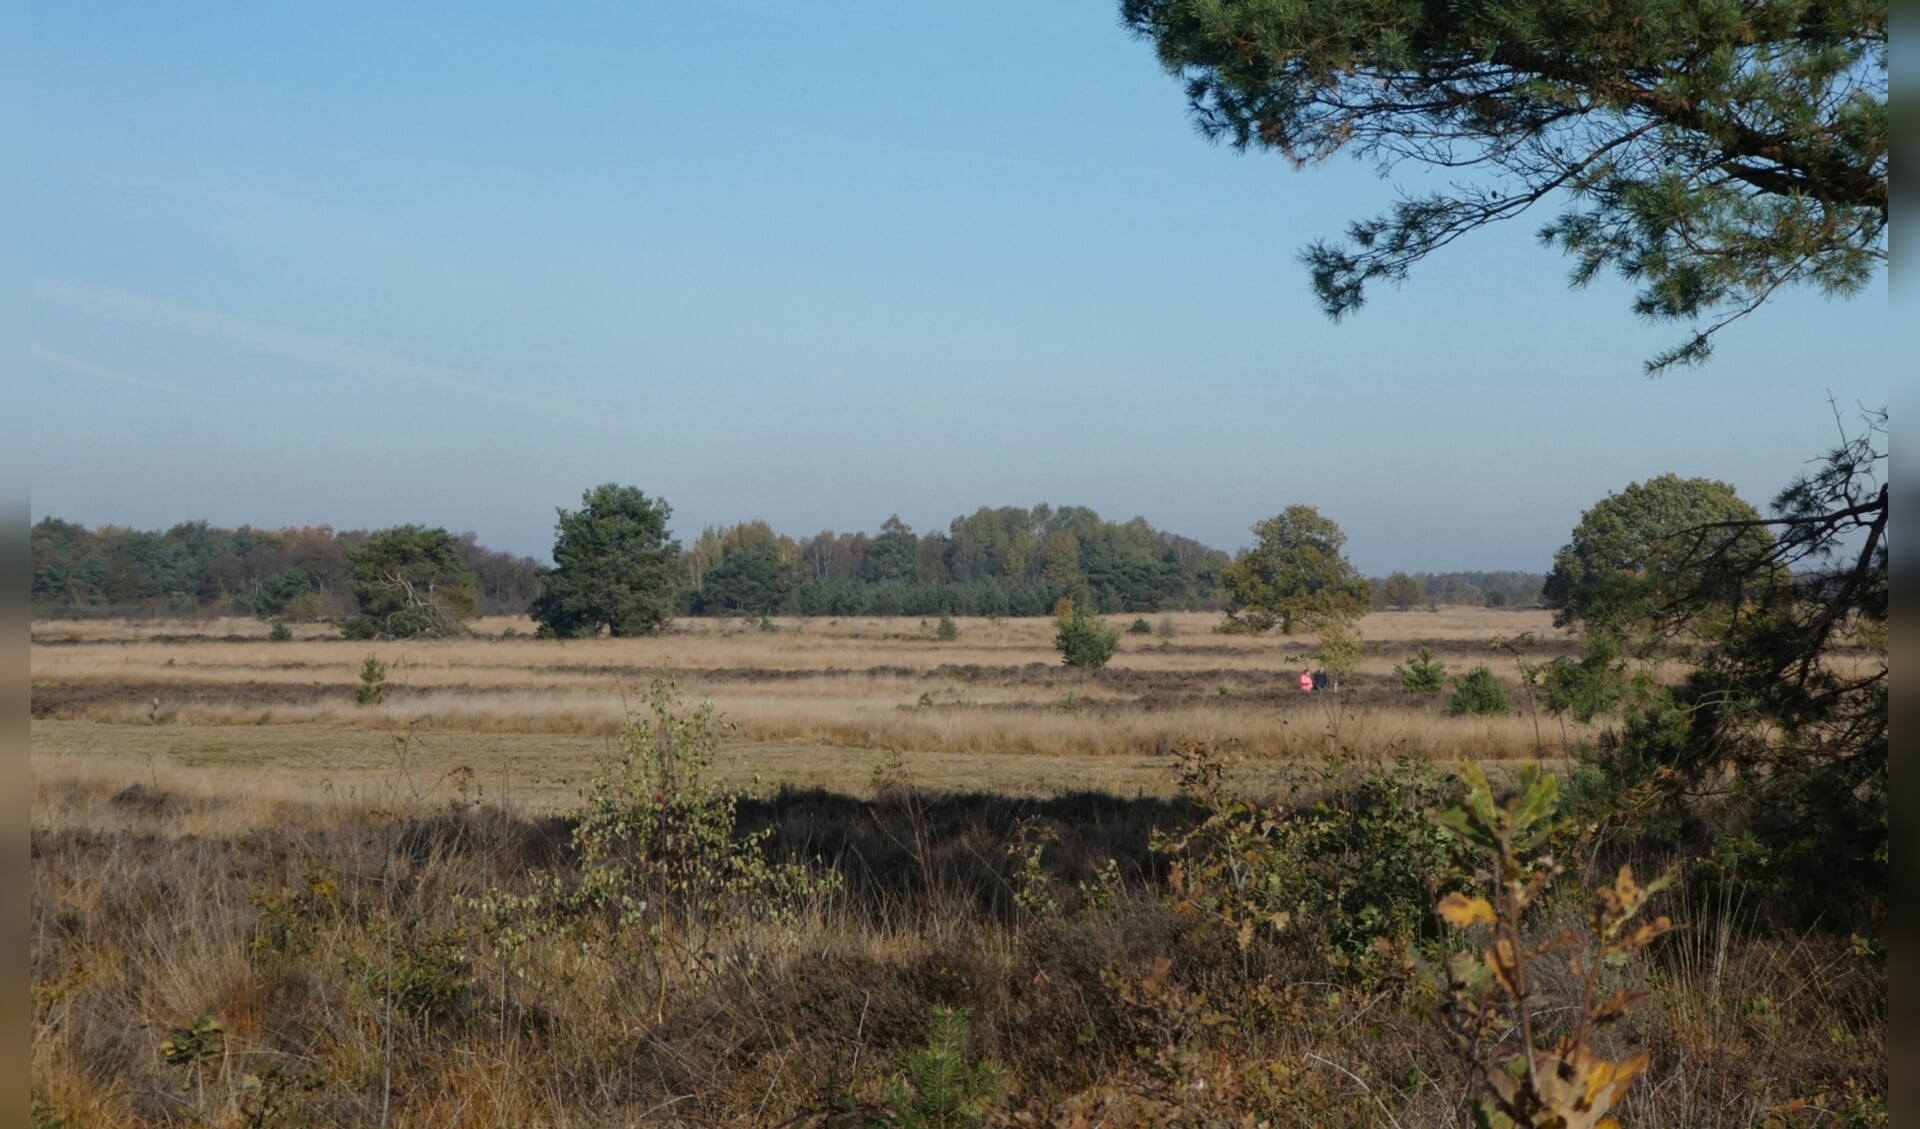 Heidevelden vergrassen door stikstof uit de lucht. De provincie Gelderland heeft maatregelen aangekondigd om de stikstofproblematiek aan te pakken.